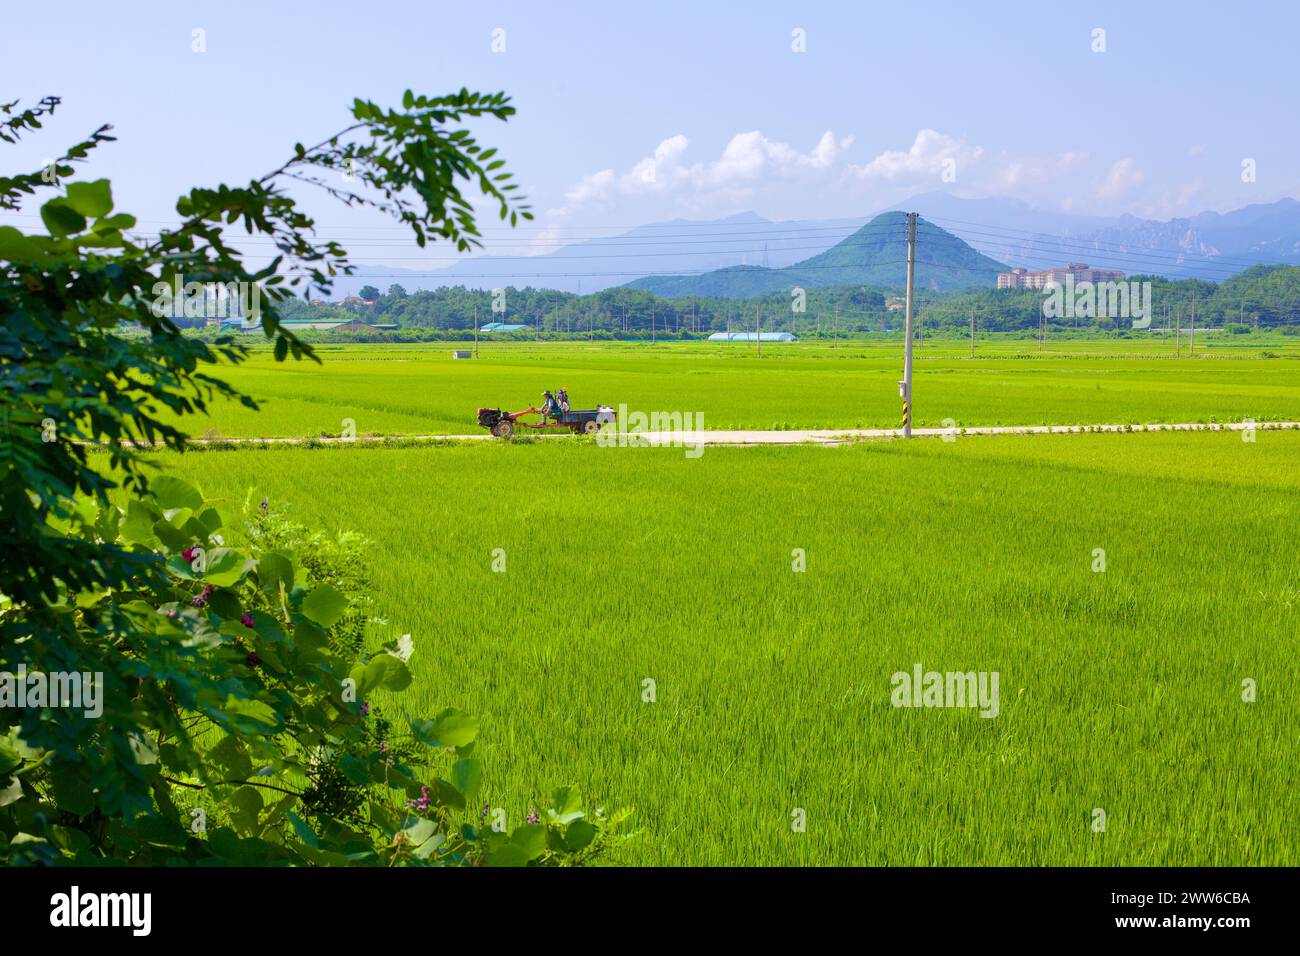 Contea di Goseong, Corea del Sud - 30 luglio 2019: Un agricoltore guida un trattore con un motore sulla parte anteriore lungo strade agricole, in mezzo a vasti campi di maturazione Foto Stock